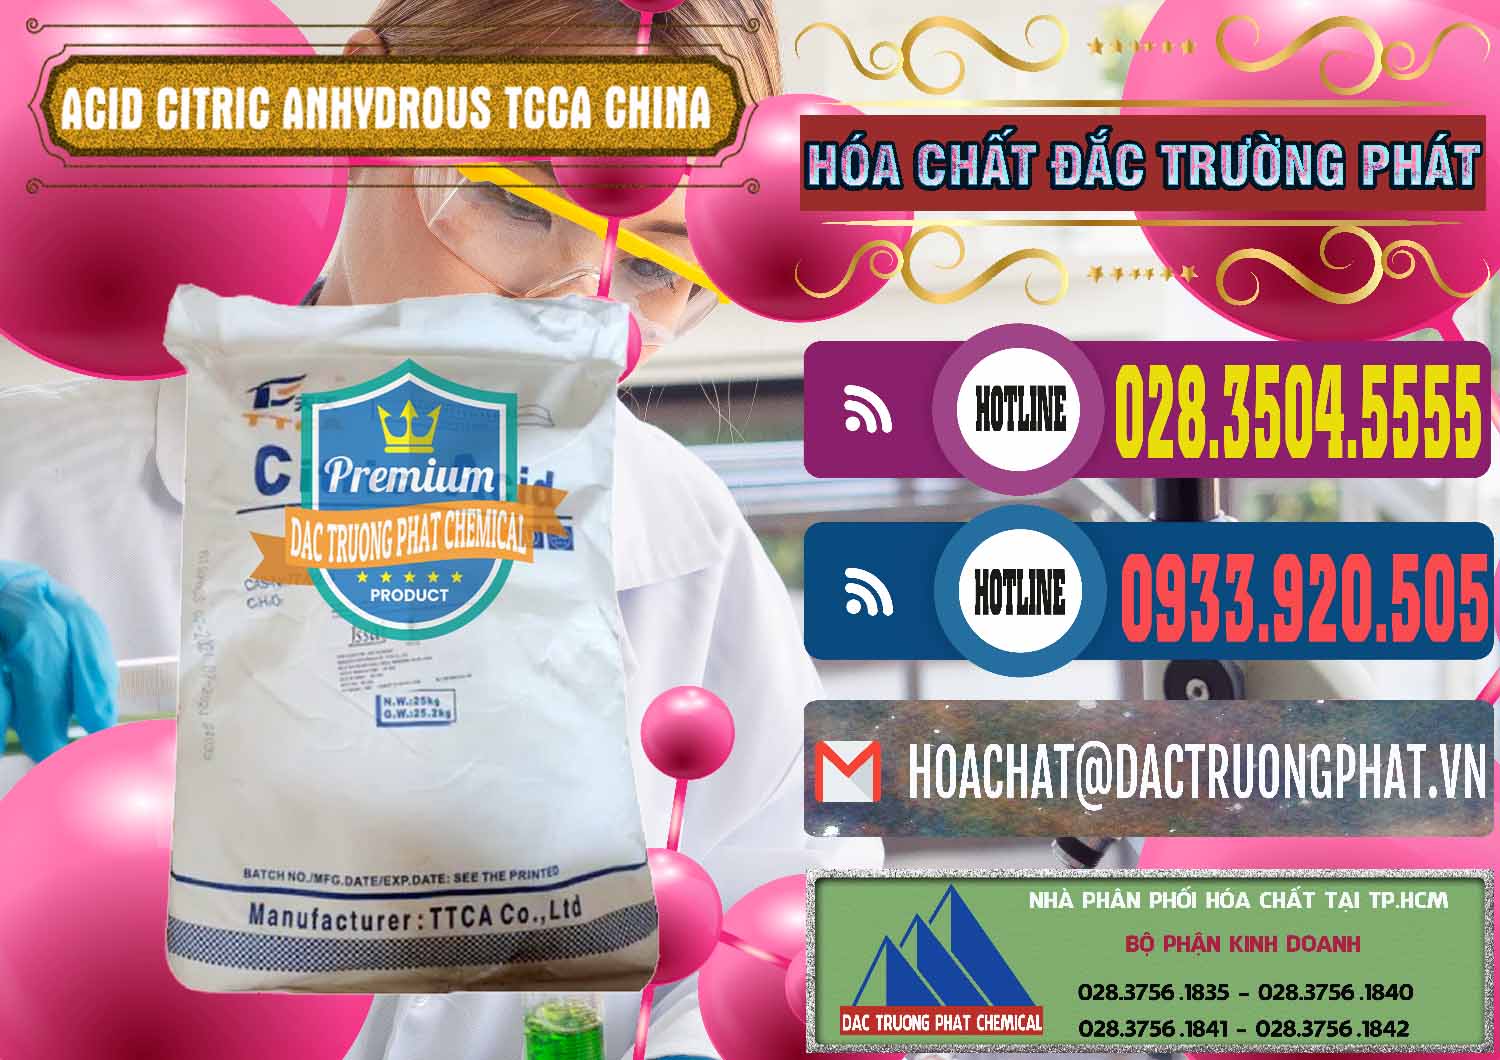 Nơi cung cấp và bán Acid Citric - Axit Citric Anhydrous TCCA Trung Quốc China - 0442 - Cty chuyên bán _ cung cấp hóa chất tại TP.HCM - muabanhoachat.com.vn